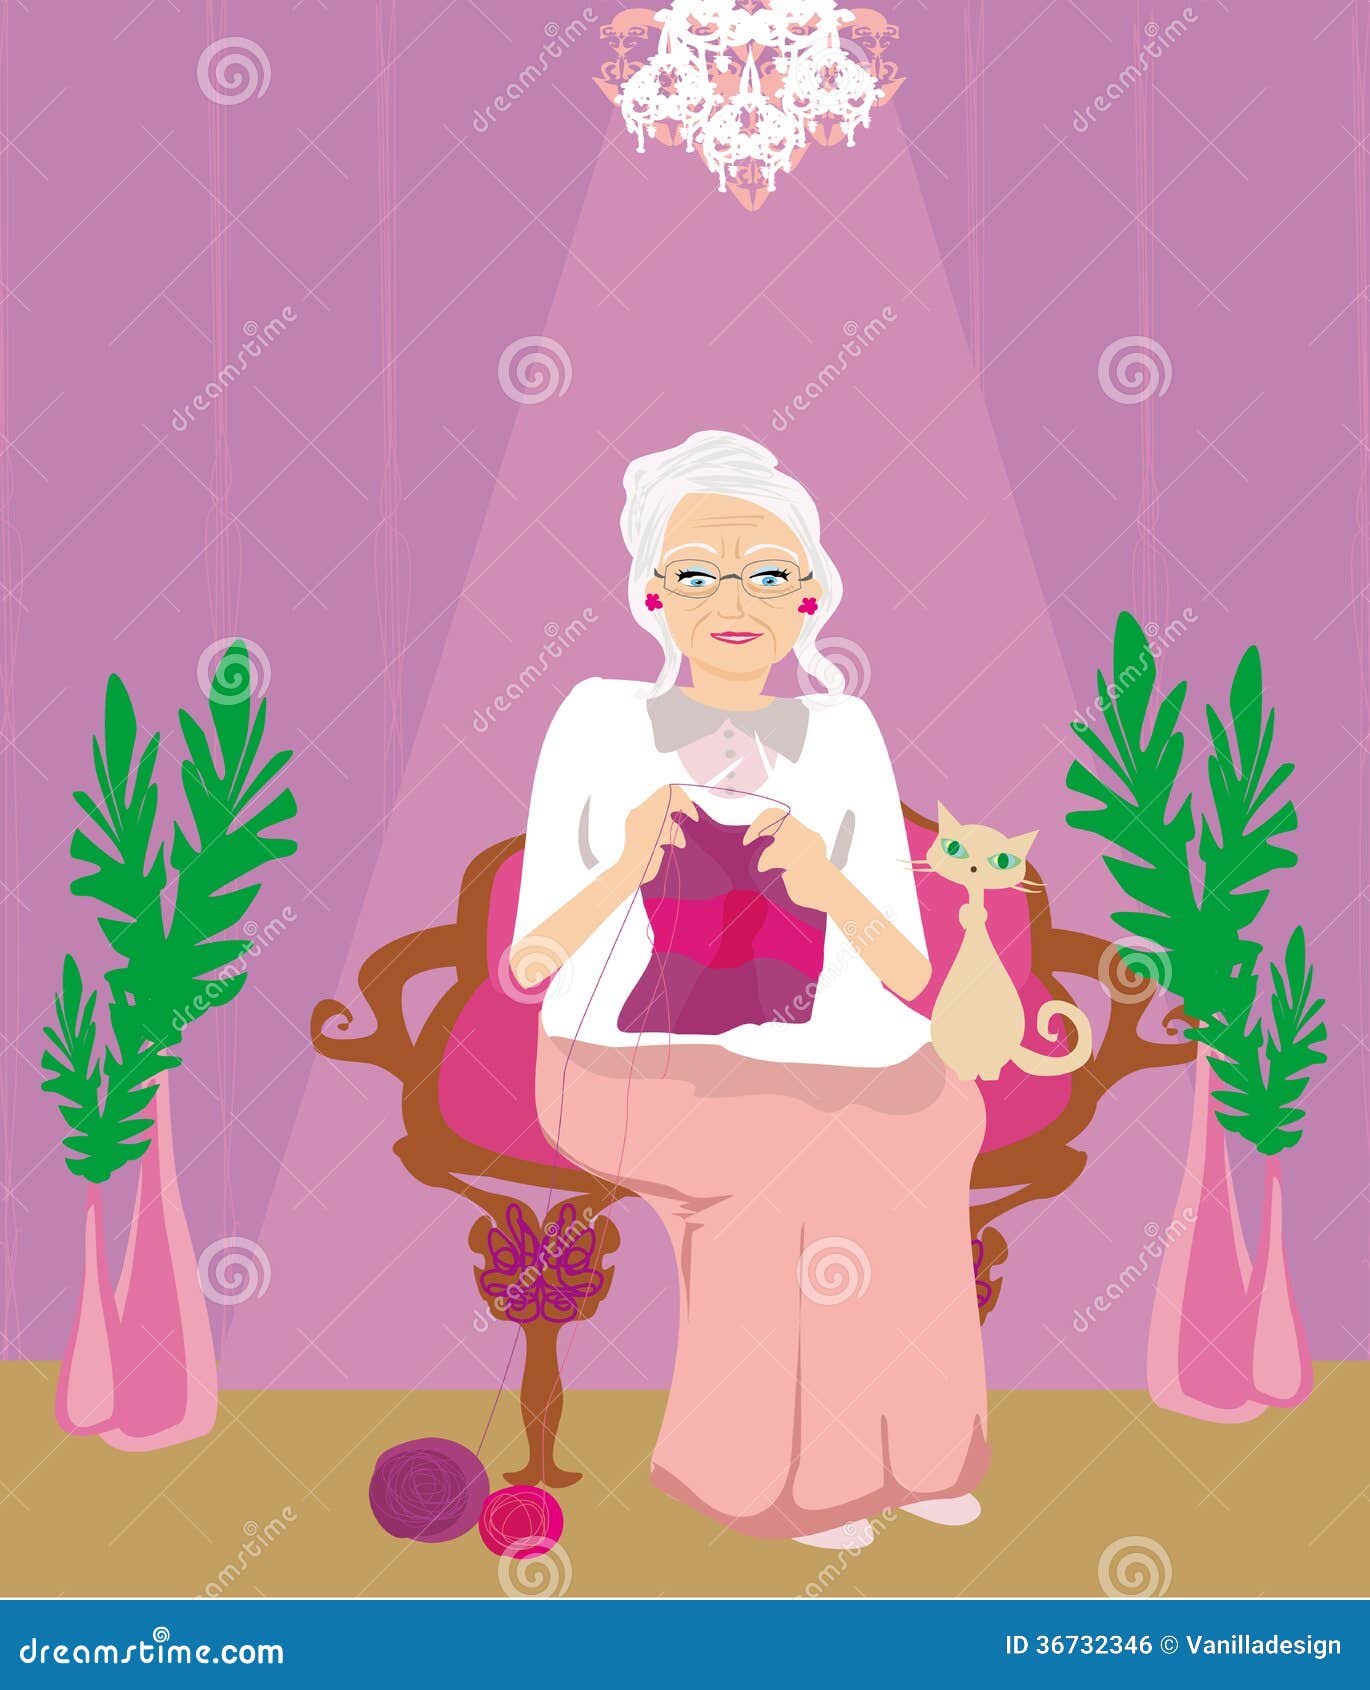 Senior woman knitting stock vector. Illustration of chandelier - 36732346